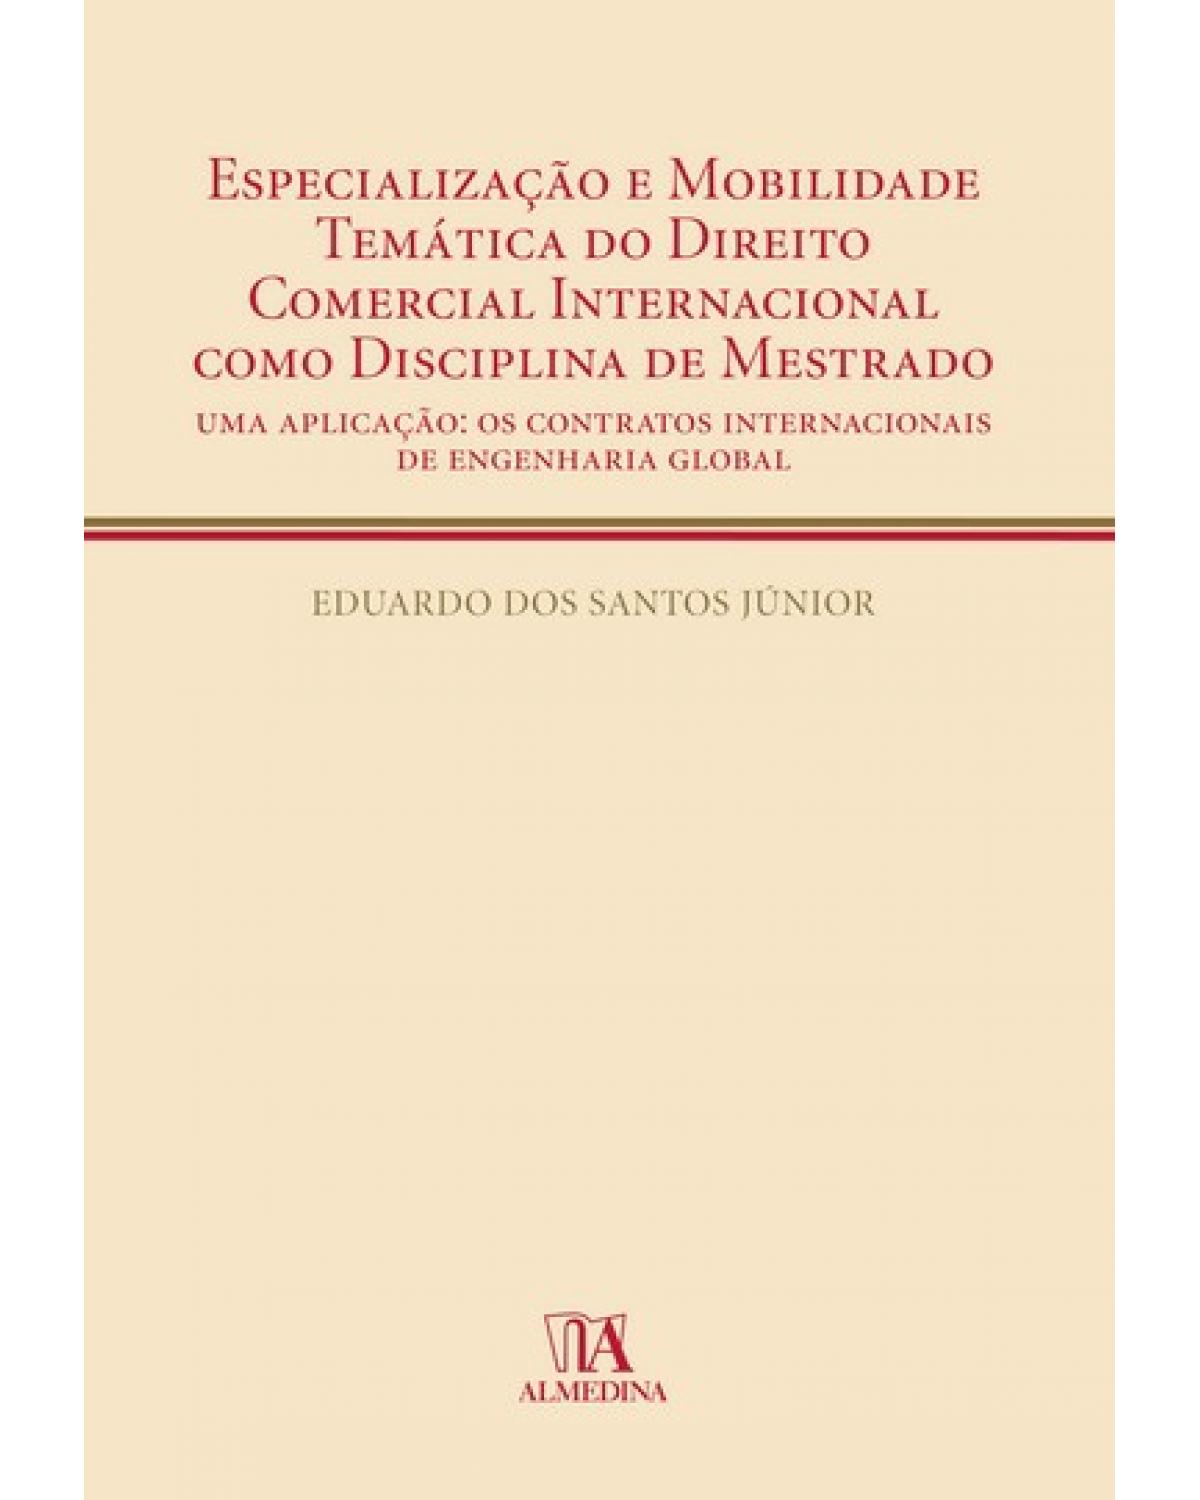 Especialização e mobilidade temática do direito comercial internacional como disciplina de mestrado  - uma aplicação: os contratos internacionais de engenharia global - 1ª Edição | 2009